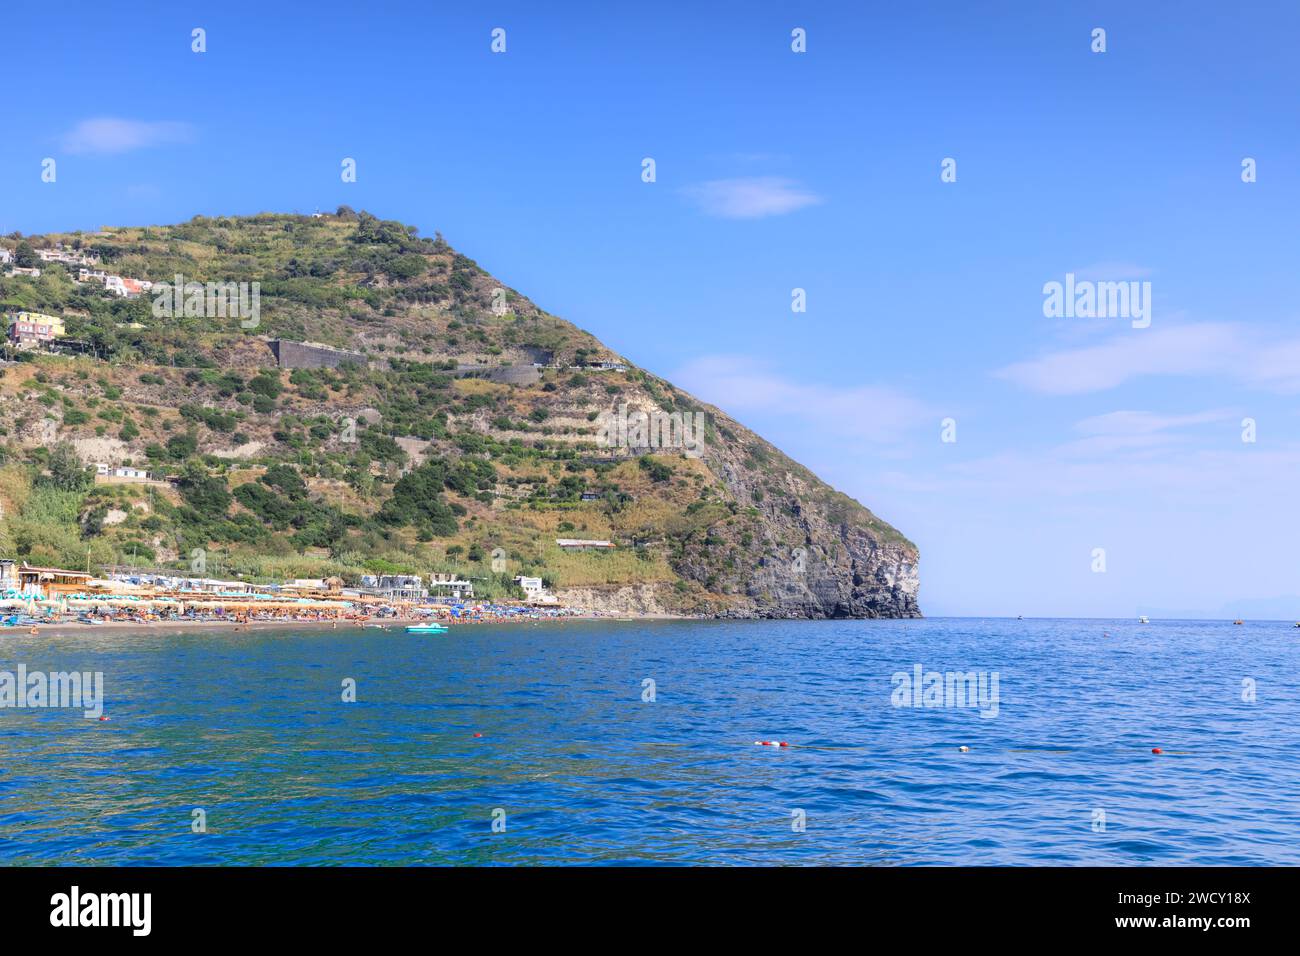 Ischia Island in Italy: panoramic view of Maronti Beach. Stock Photo